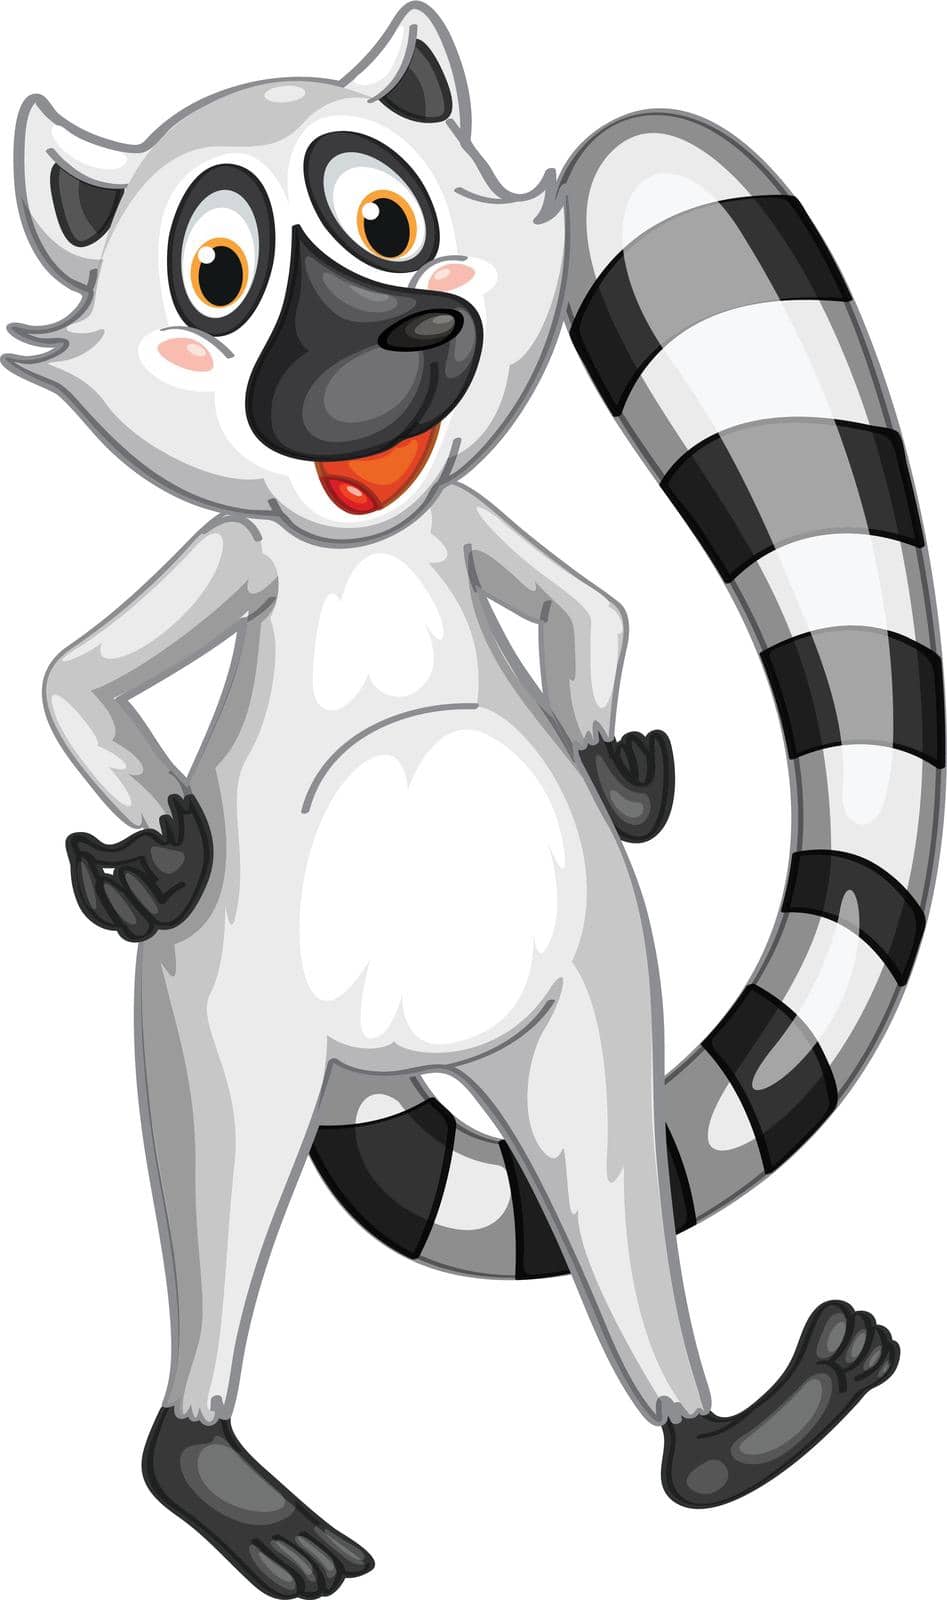 Mr Lemur by iimages